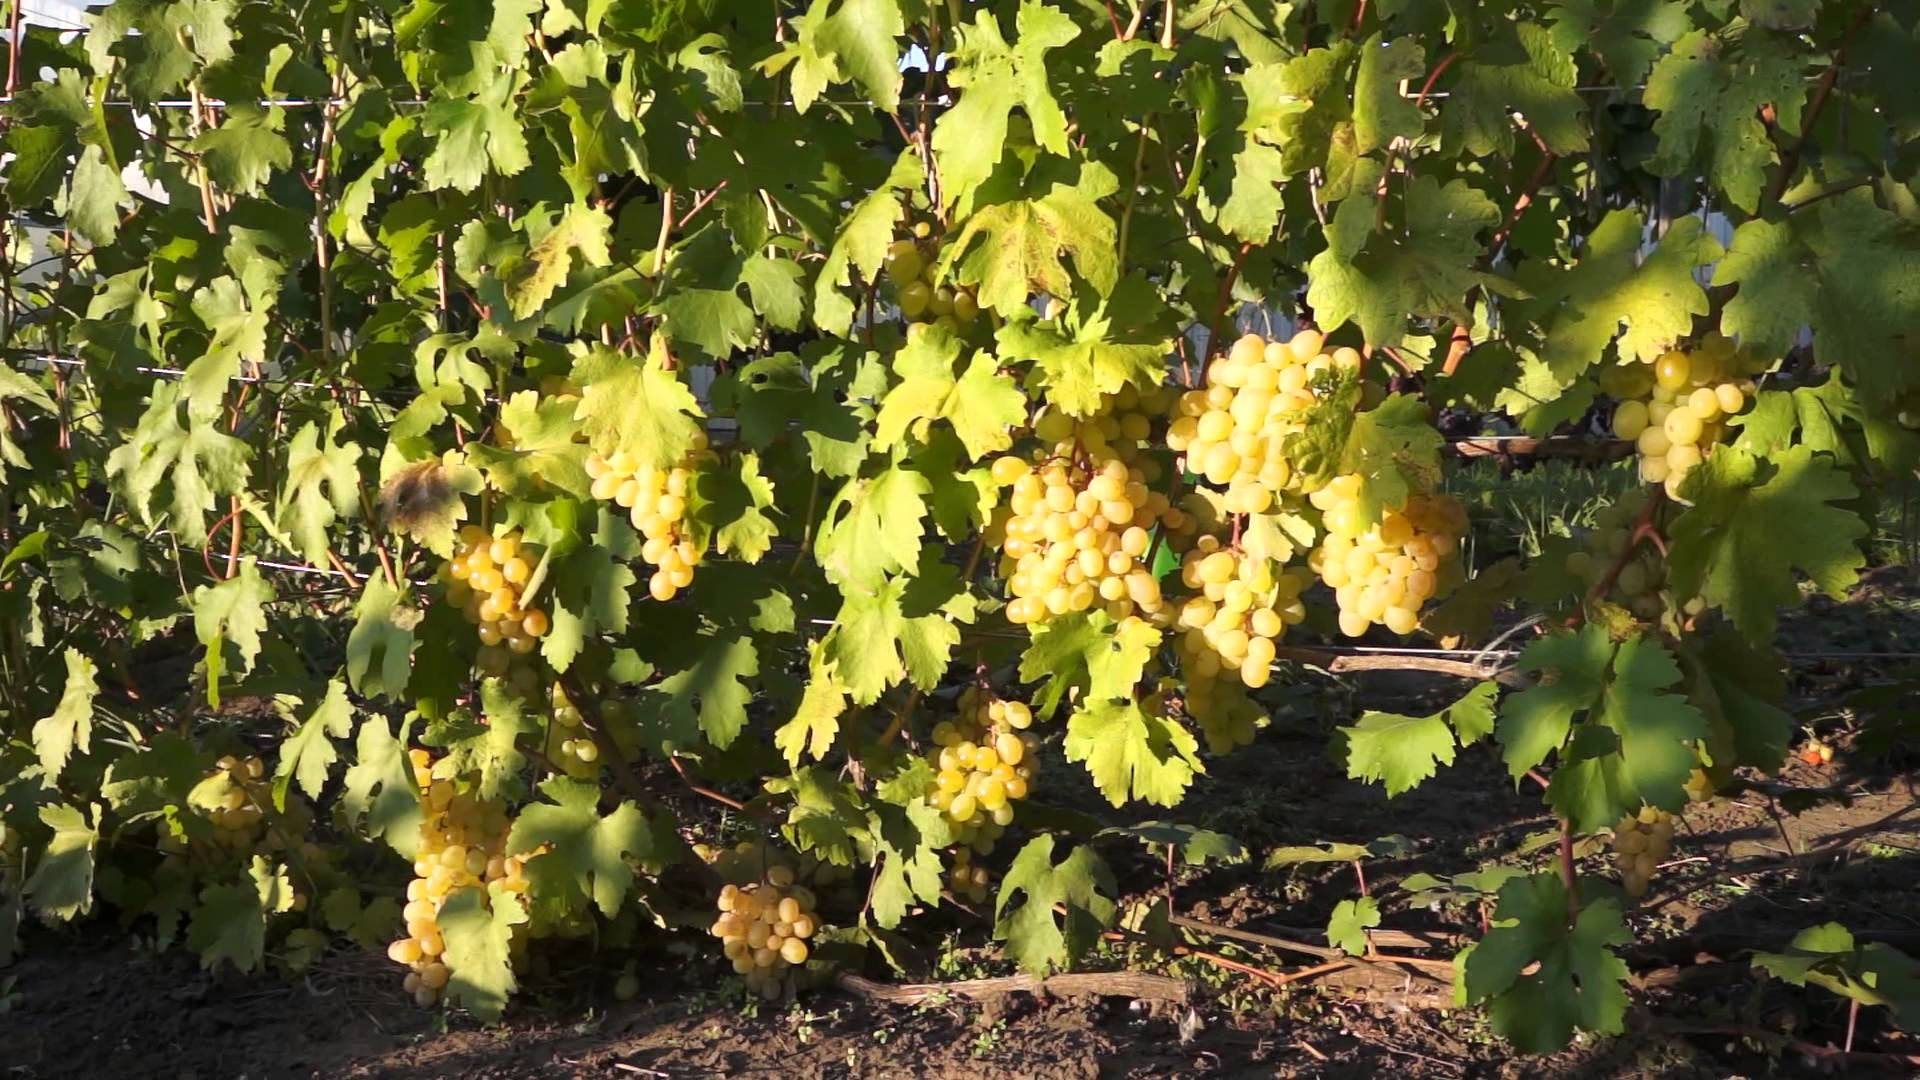 Лучшие сорта винограда для рынка: посадка и уход